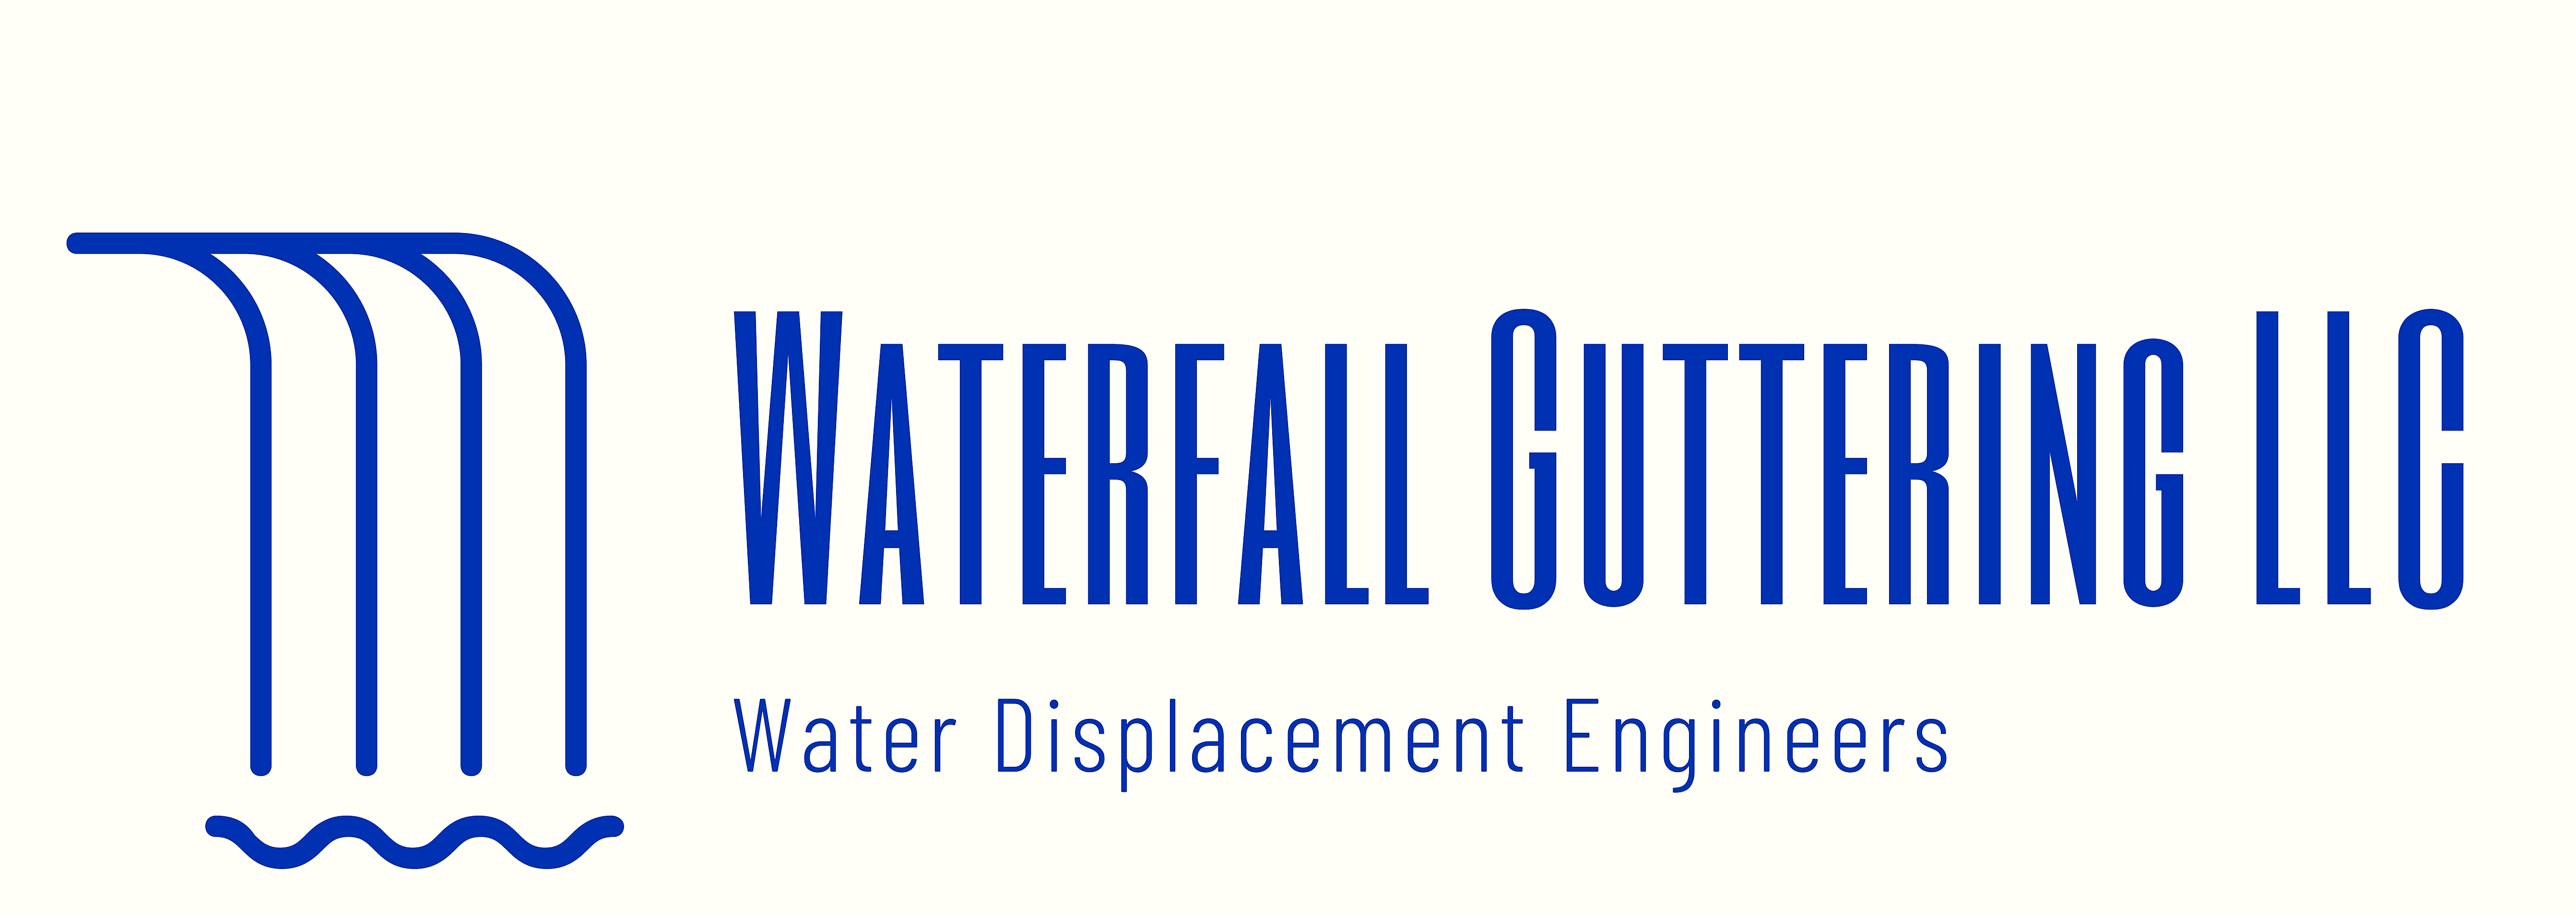 Waterfall Guttering, LLC Logo